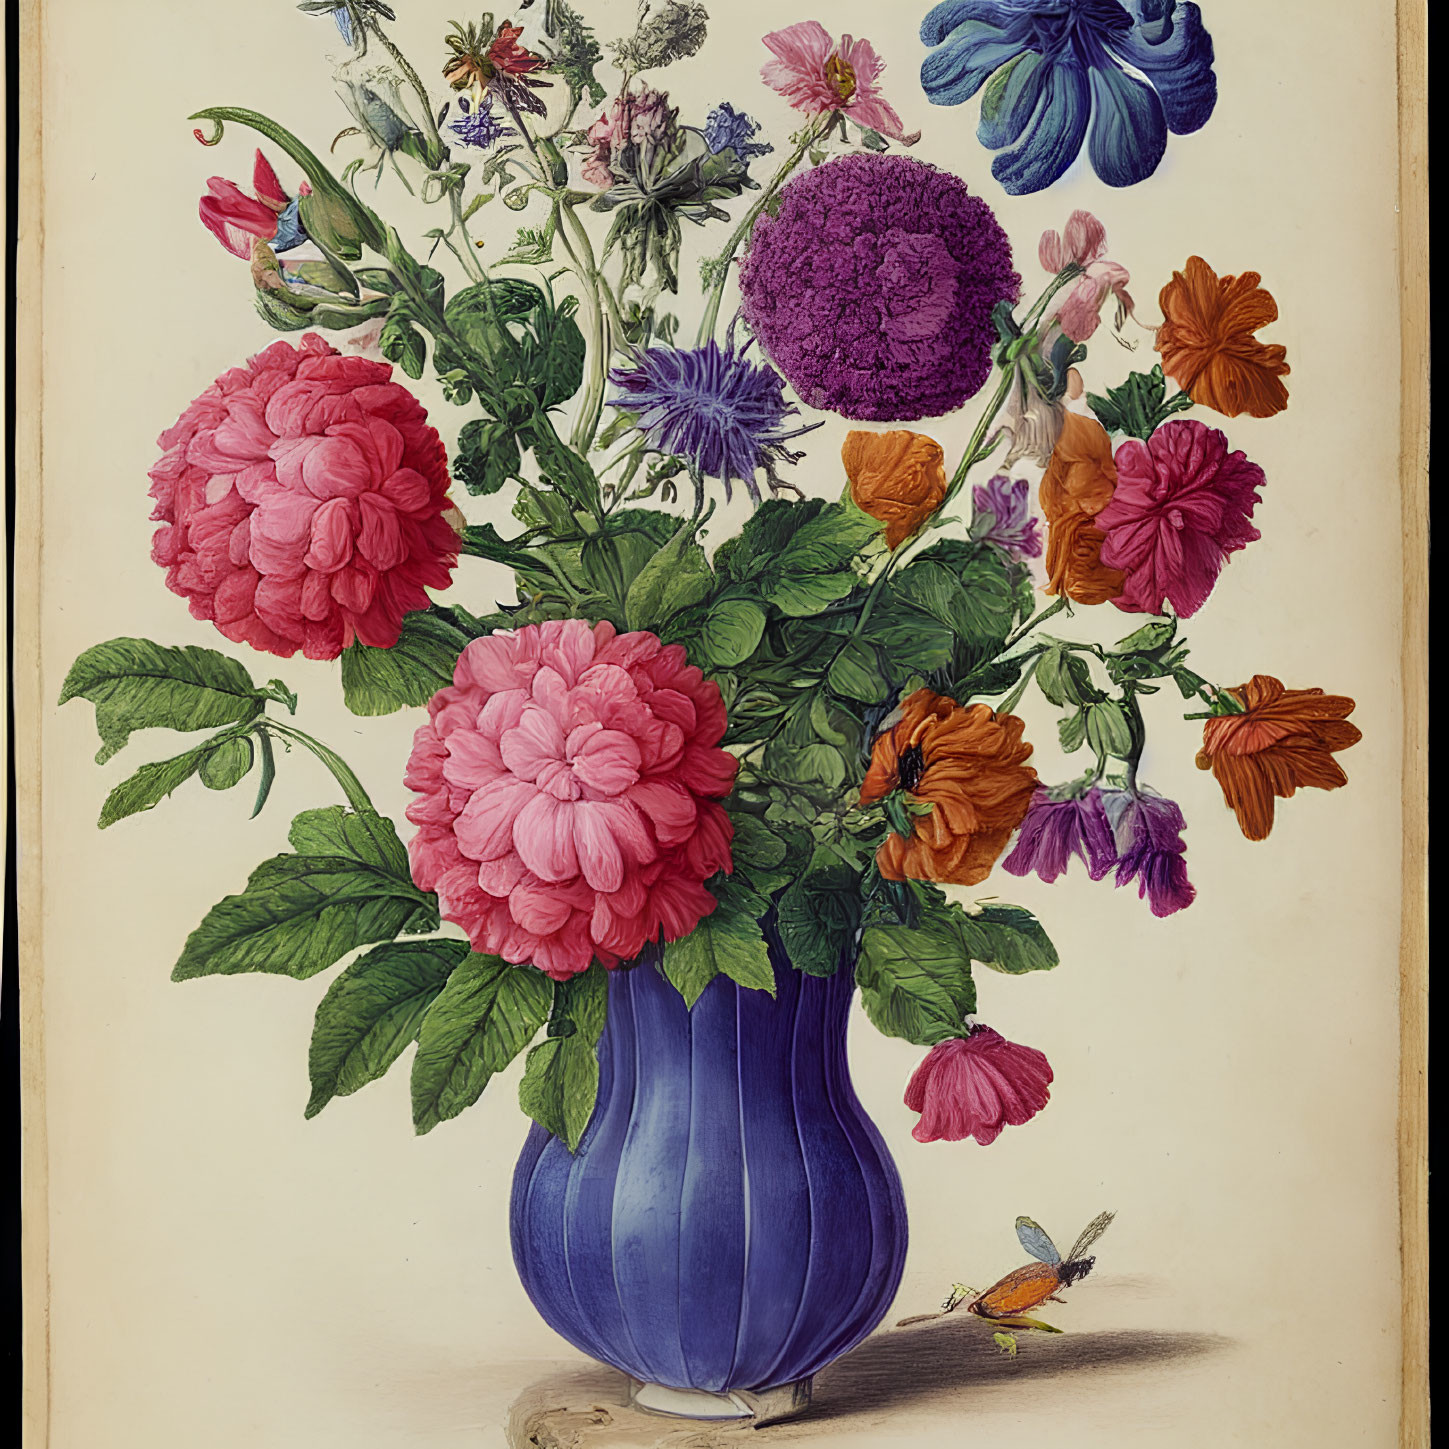 Colorful vintage illustration: Blue vase, flowers, bird